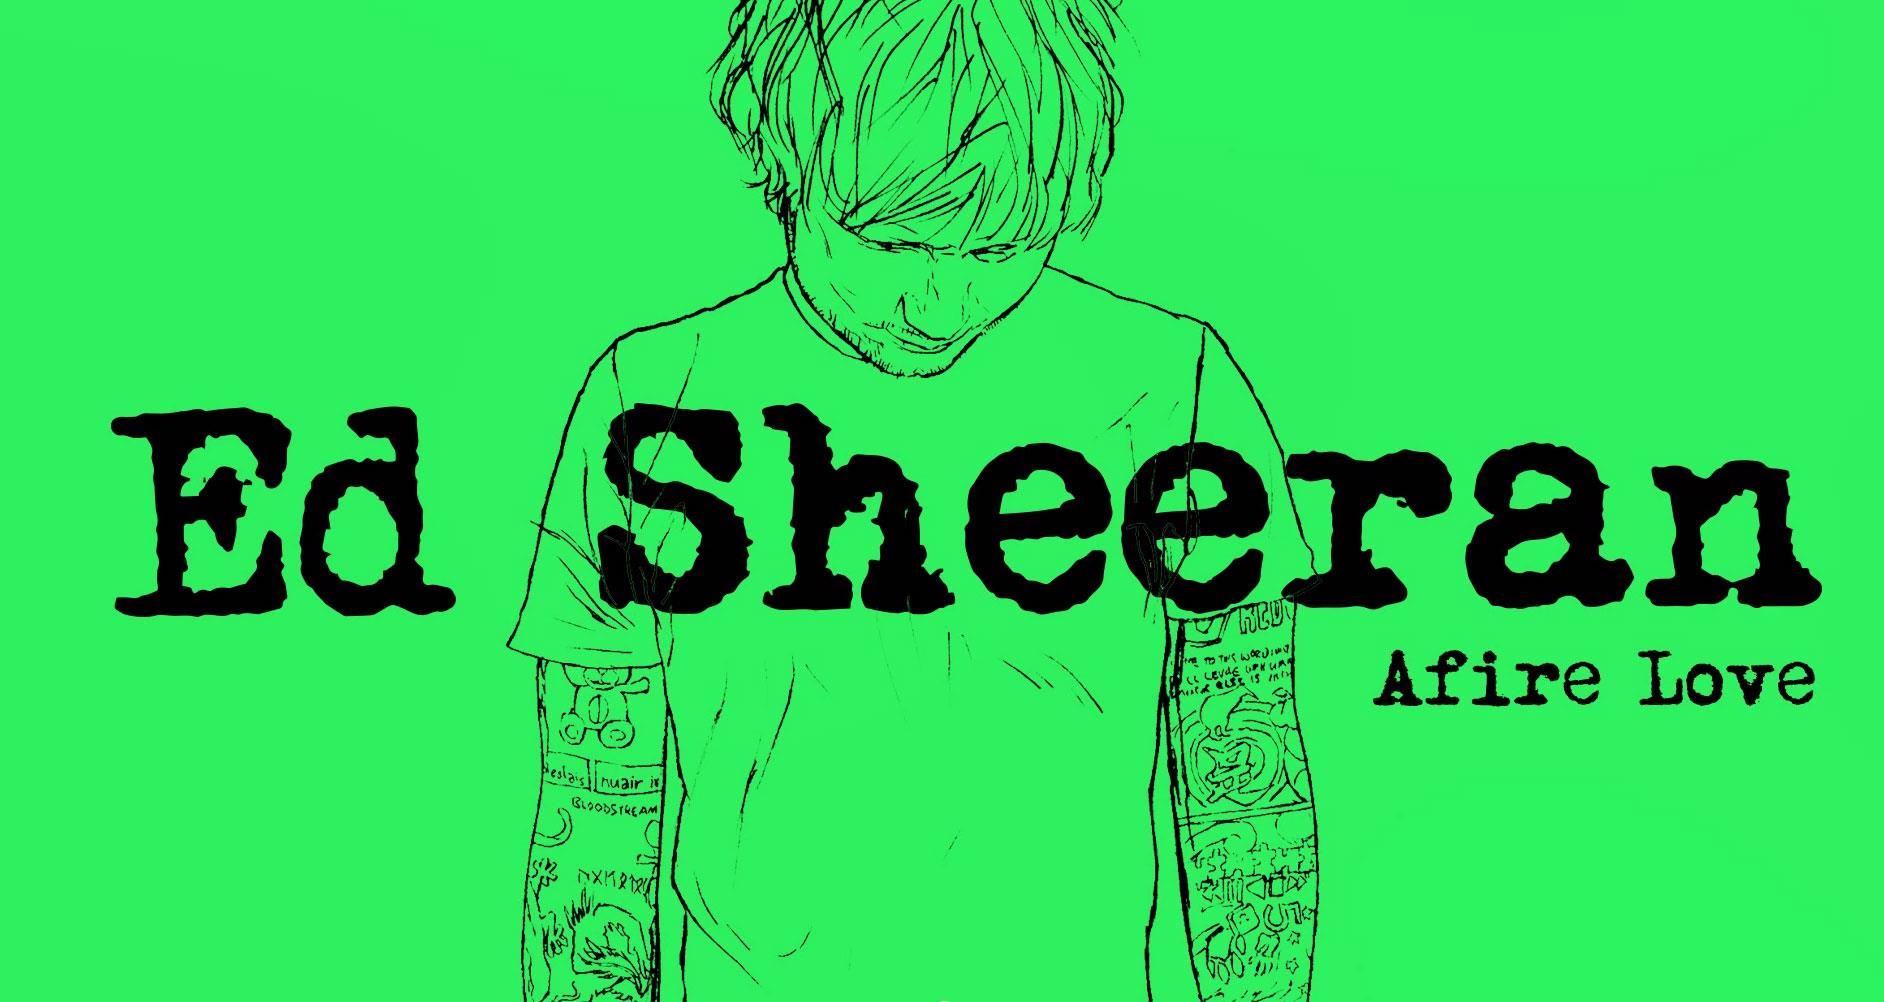 Il  video di Ed Sheeran Afire Love